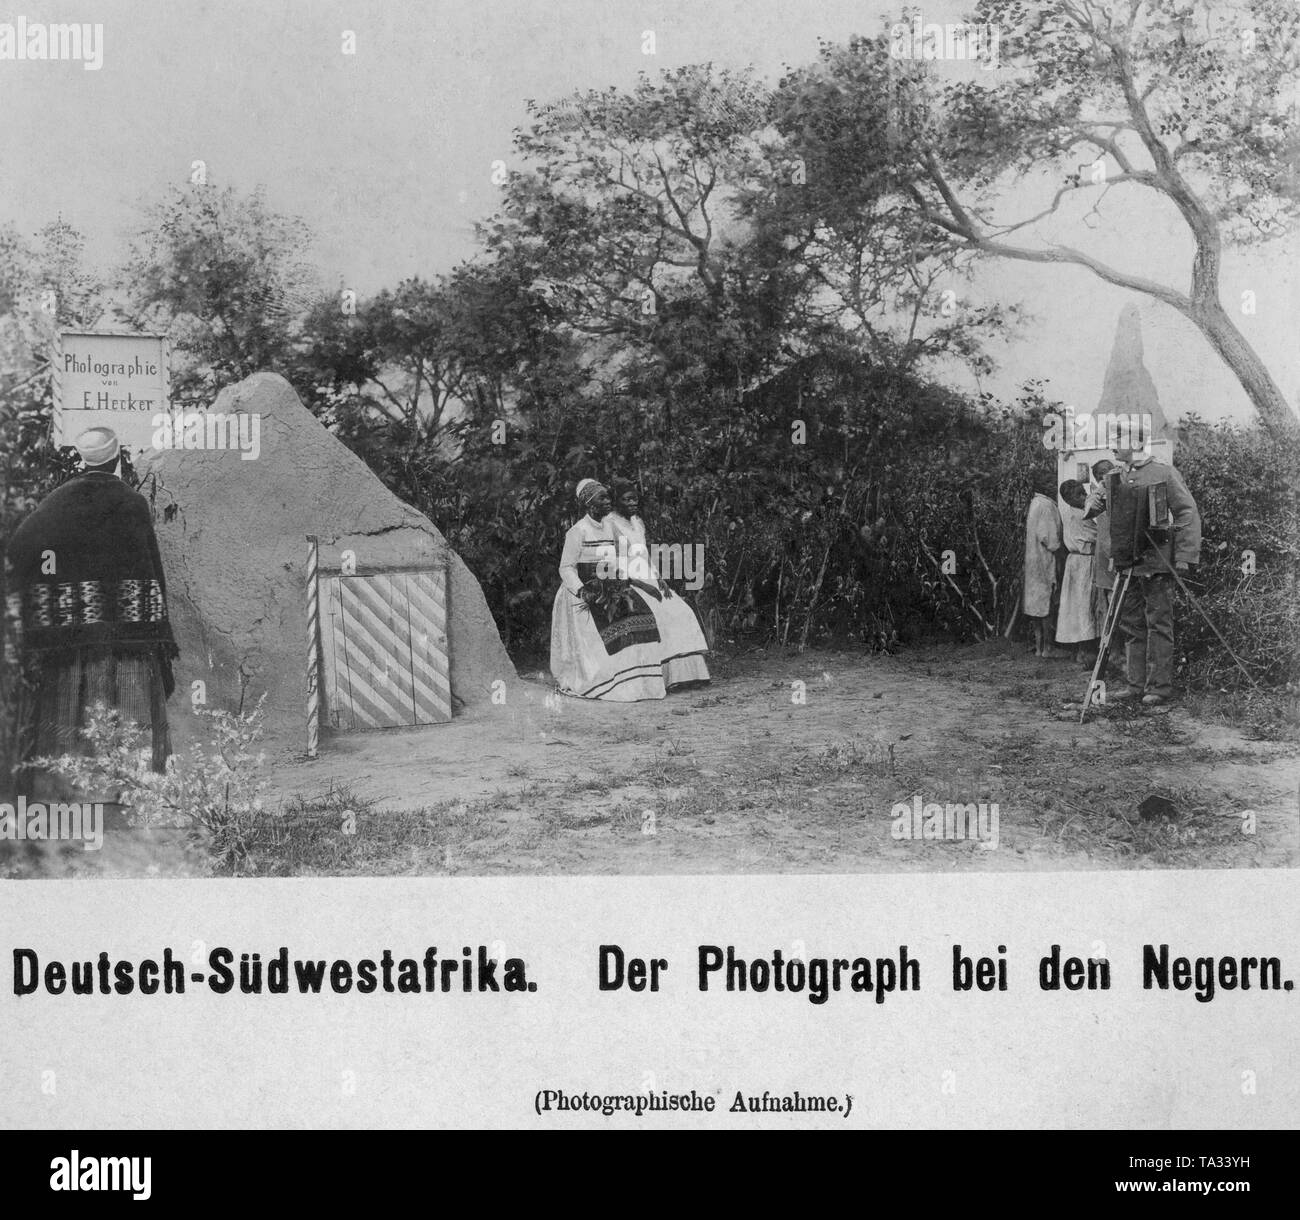 Der Fotograf E.Hecker Fotografien der dortigen Frauen in europäischen Kleidung in Deutsch-südwestafrika. Stockfoto